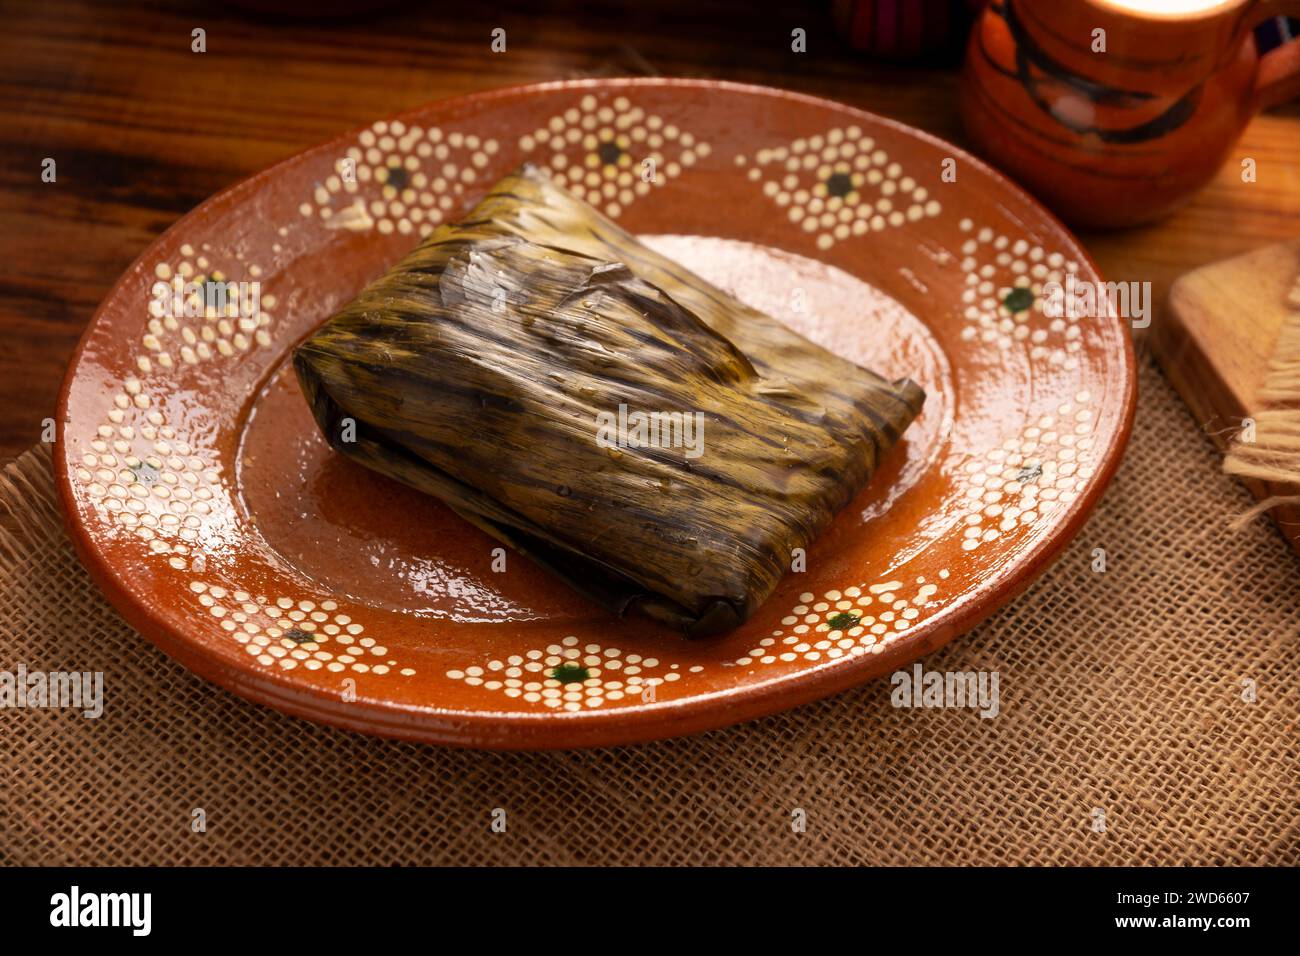 Oaxacan Tamale. Plat préhispanique typique du Mexique et de certains pays d'Amérique latine. Pâte de maïs enveloppée dans des feuilles de bananier. Les tamales sont cuits à la vapeur. Banque D'Images